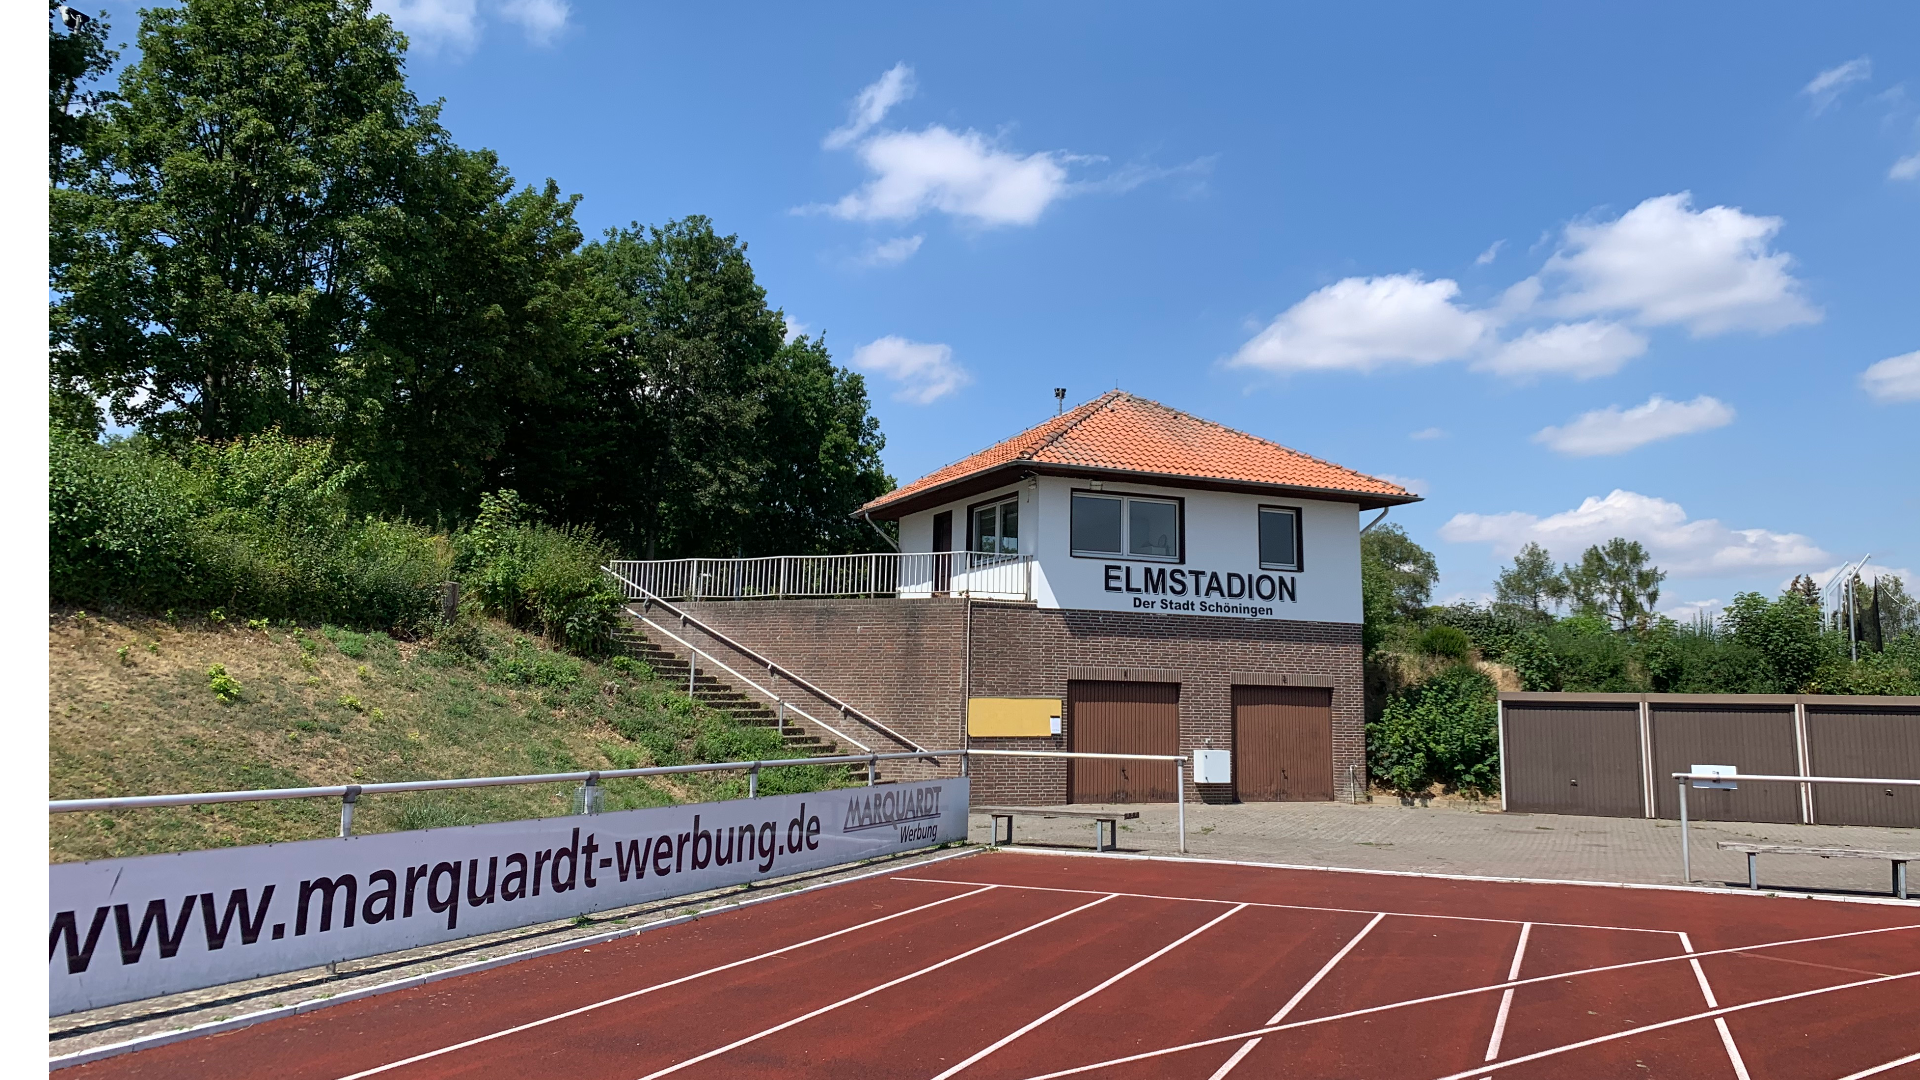 Verbesserte Förderung für Sportstättenbau in Schöningen